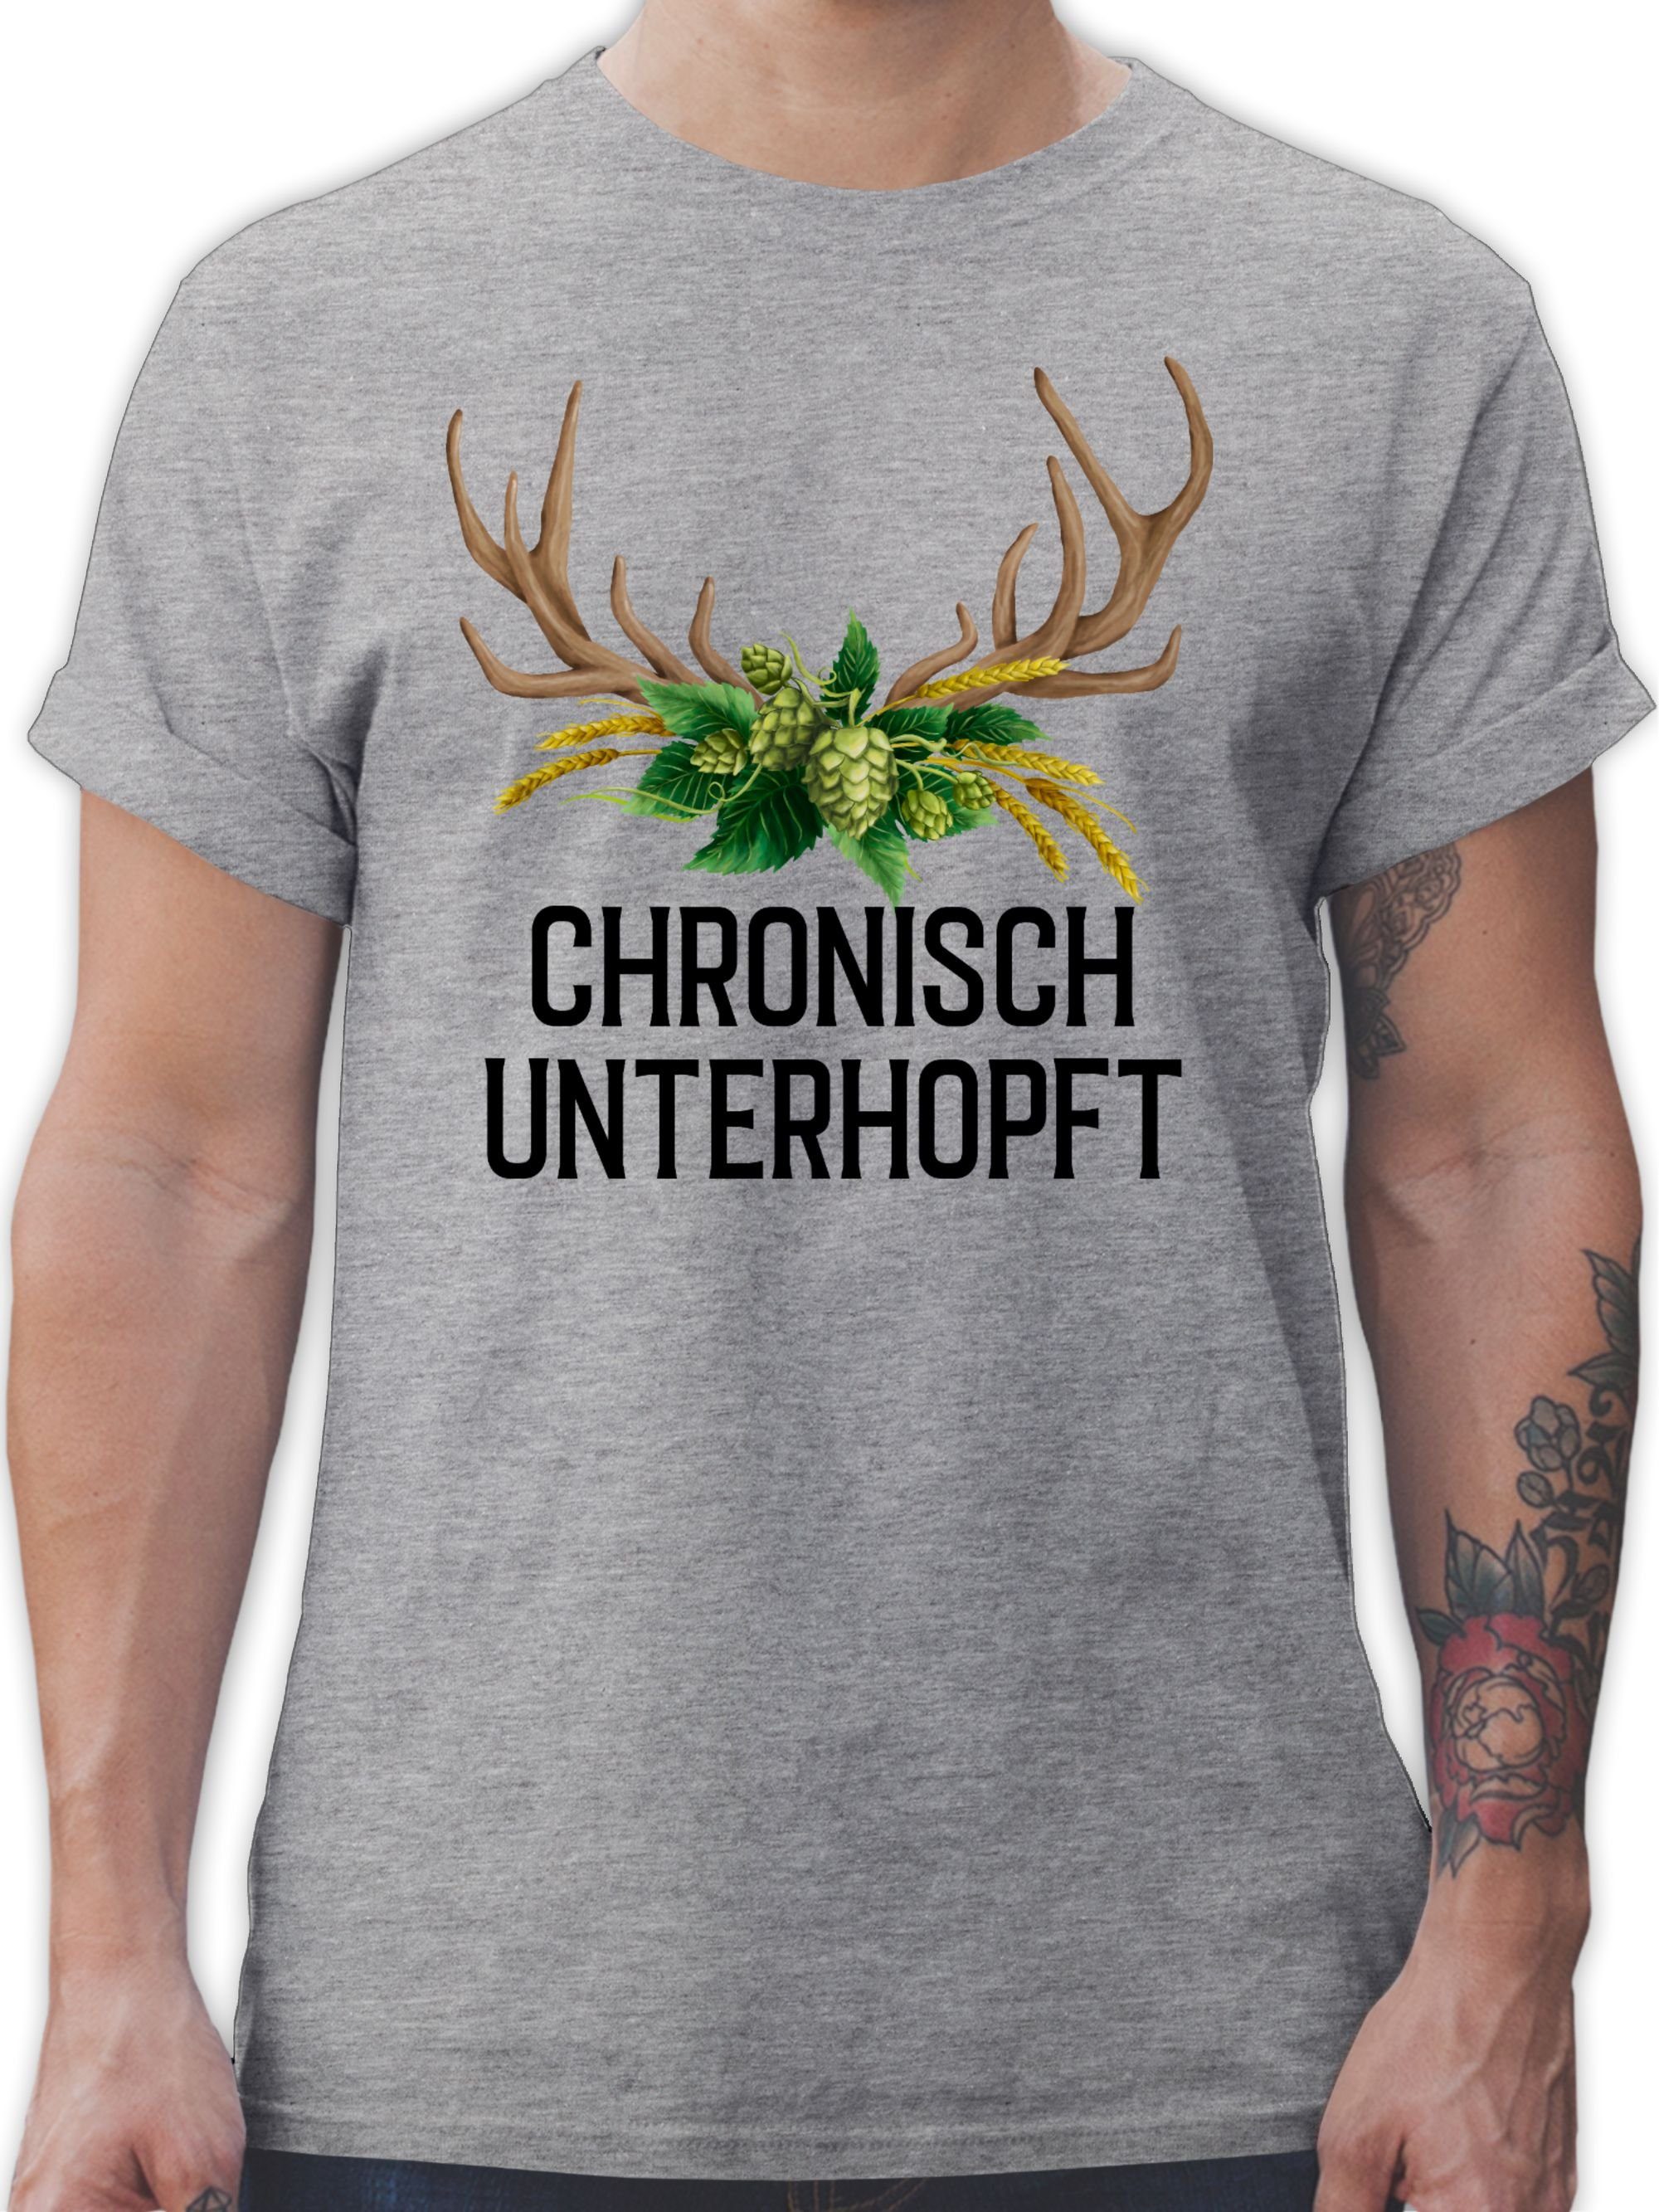 Chronisch Oktoberfest Weizen Herren unterhopft und Shirtracer meliert Grau - T-Shirt 03 für Mode Hirschgeweih Hopfen